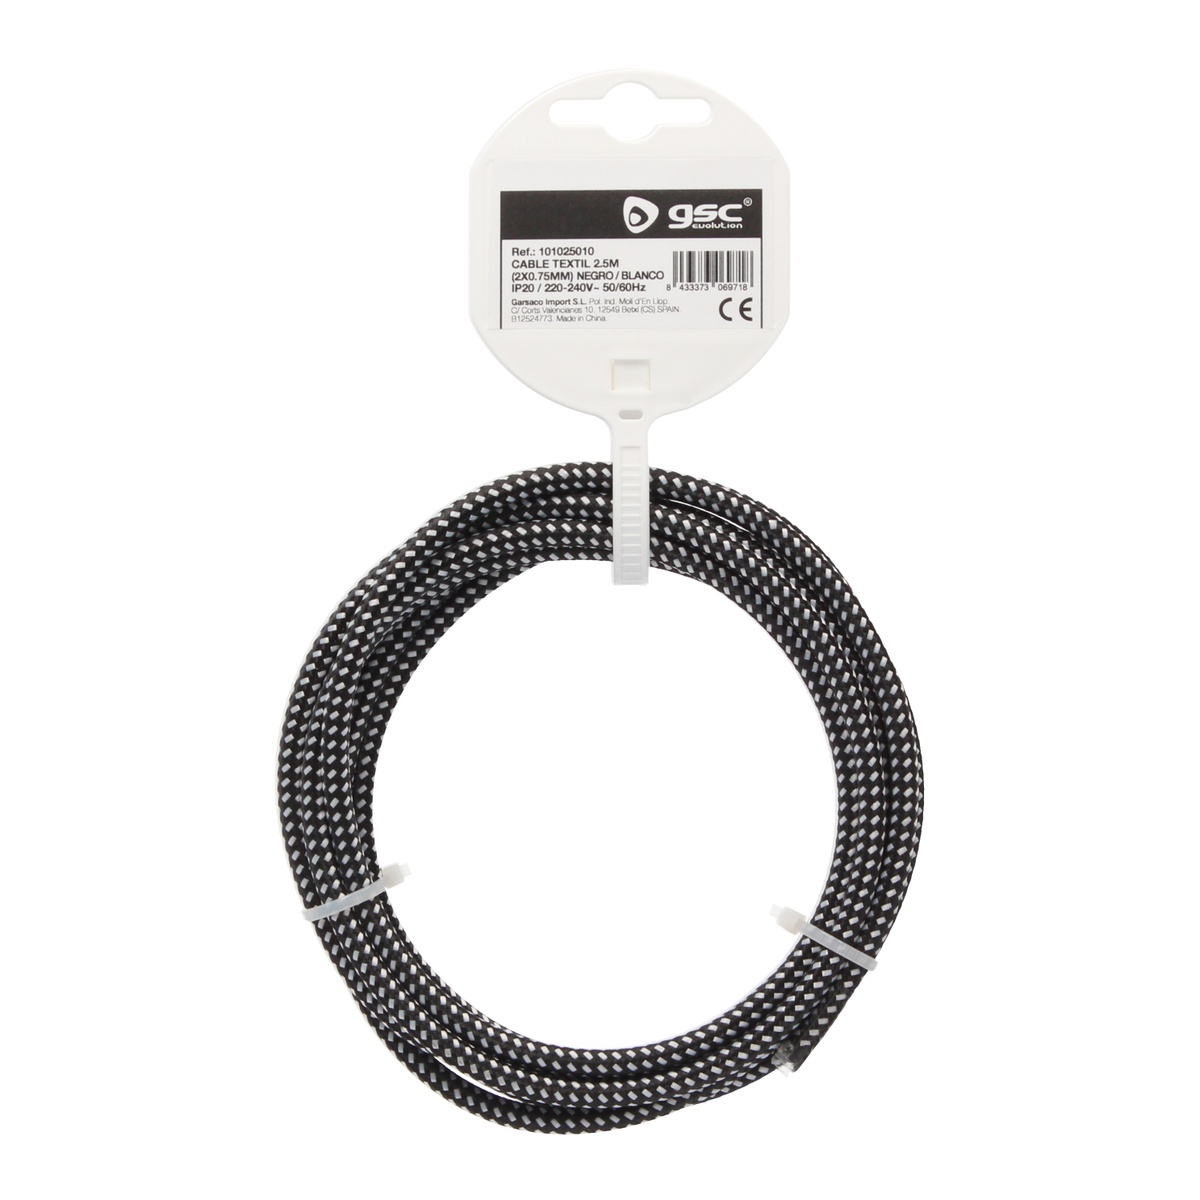 2.5m textile cable (2x0.75mm) Black/White